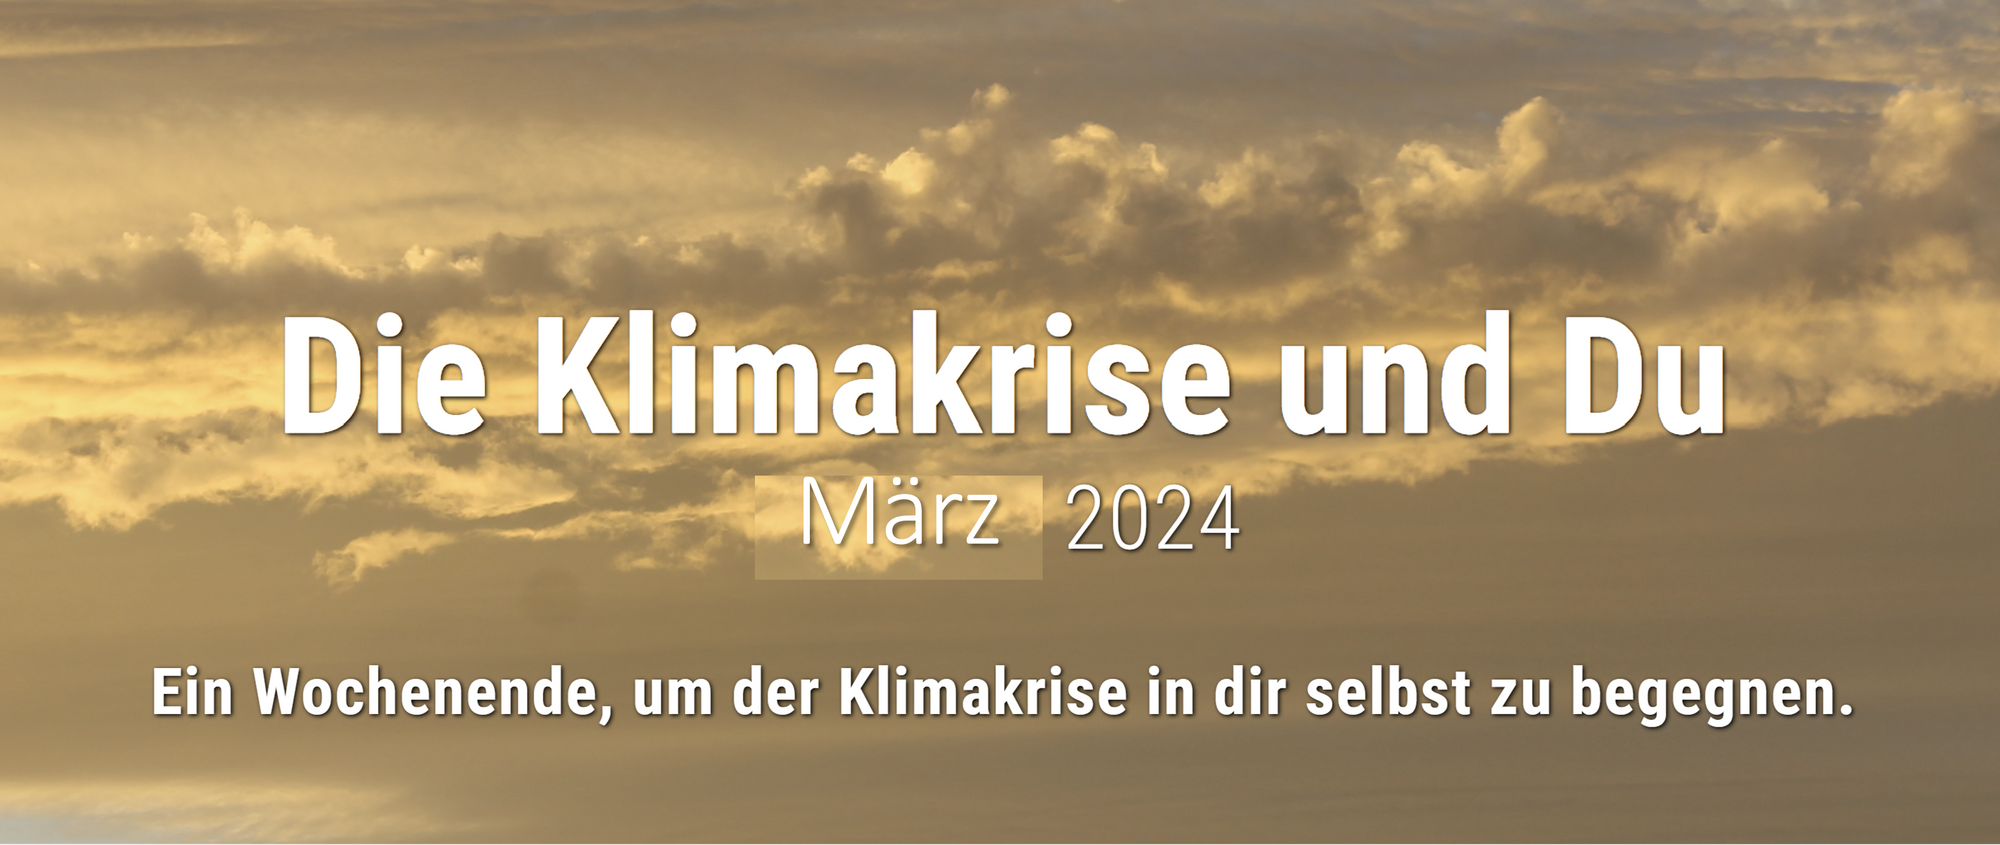 Workshop "Die Klimakrise fühlen" online am Sonntag, den 12. Mai 2024